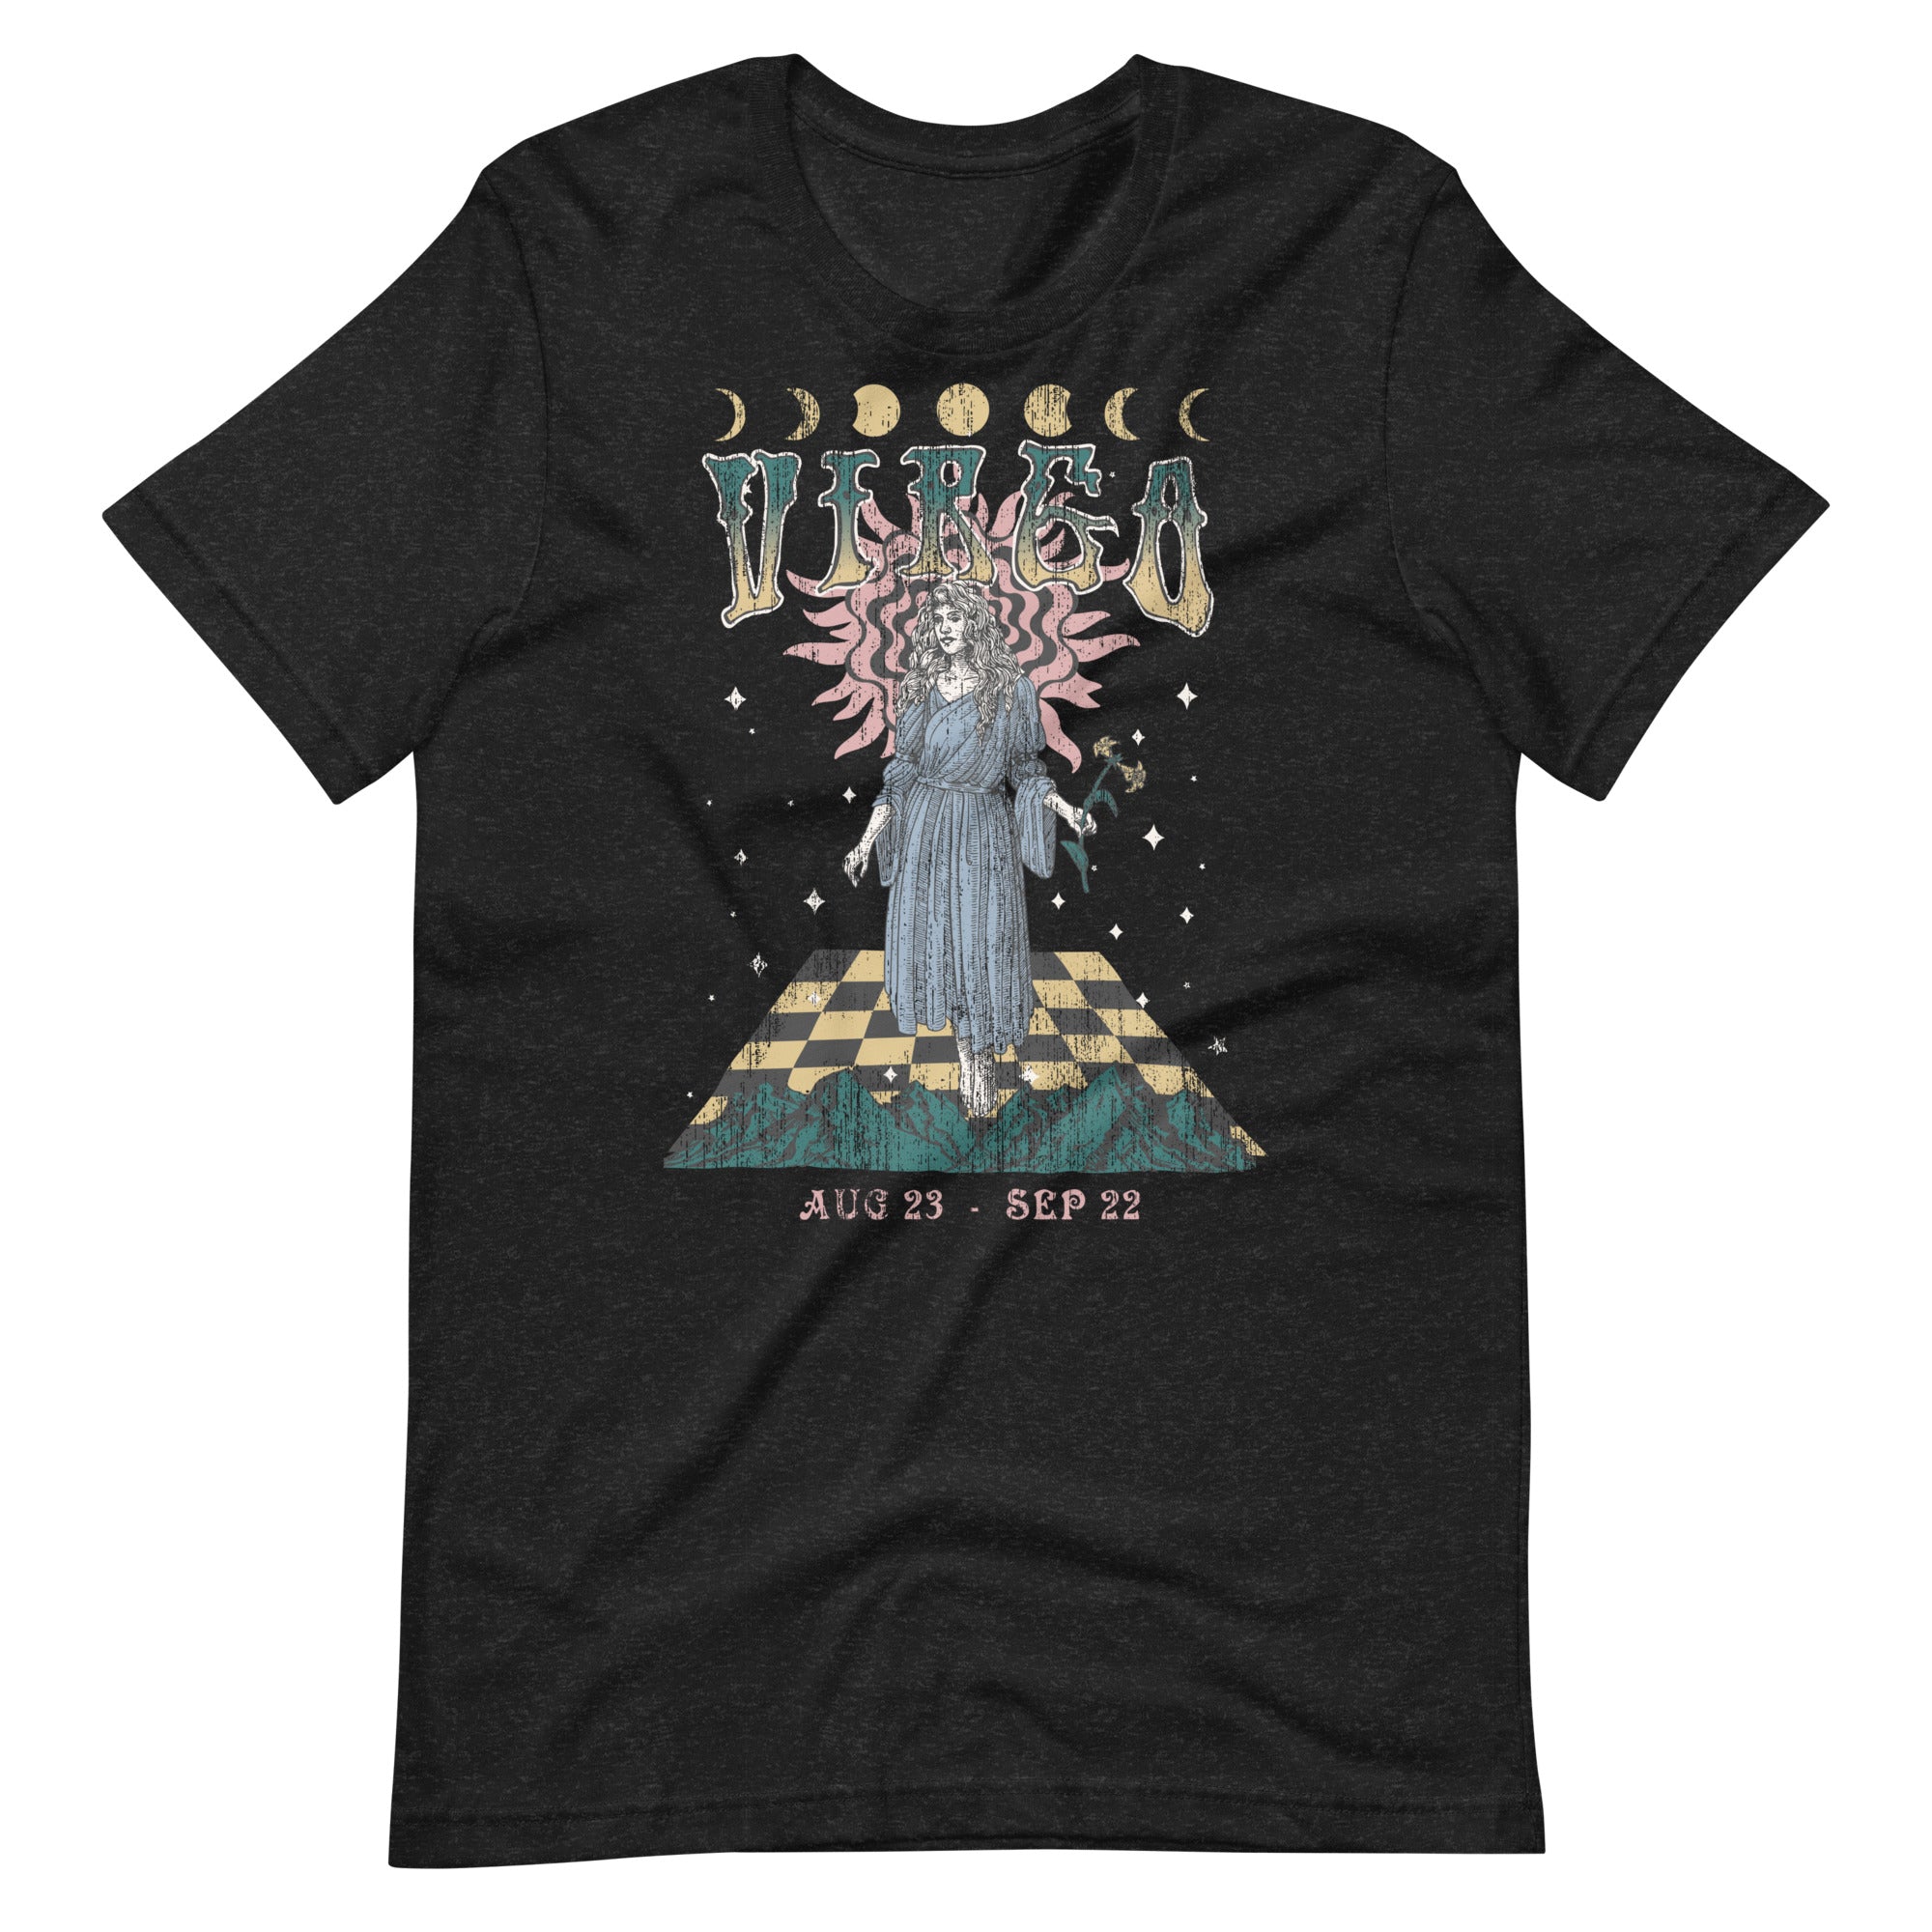 Virgo Band T-Shirt Inspired Graphic Tee